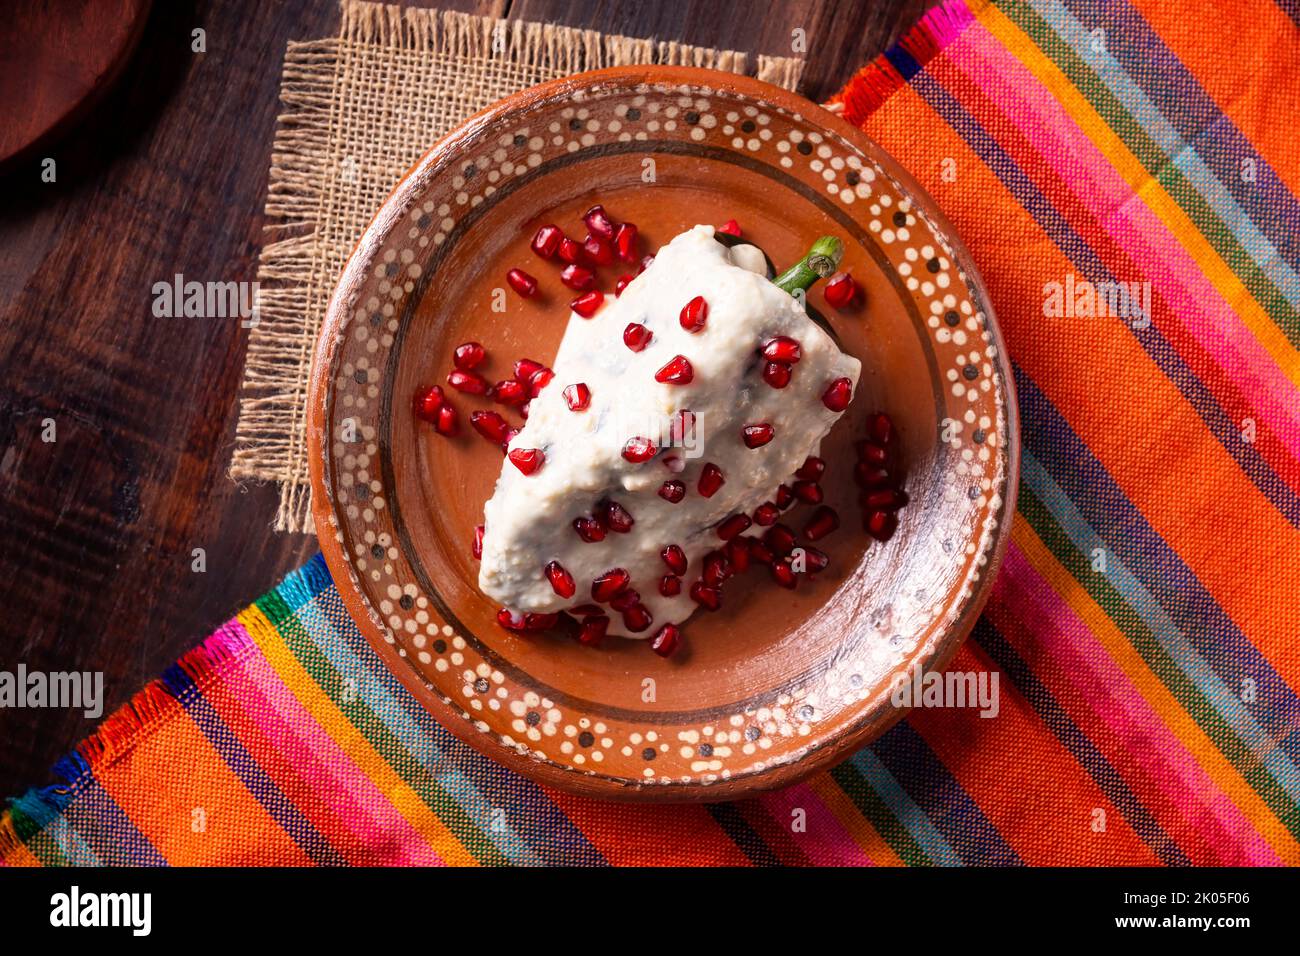 Chili en Nogada, plat typique du Mexique. Préparé avec du piment de Poblano farci de viande et de fruits et recouvert d'une sauce spéciale aux noix. Nommé comme Banque D'Images